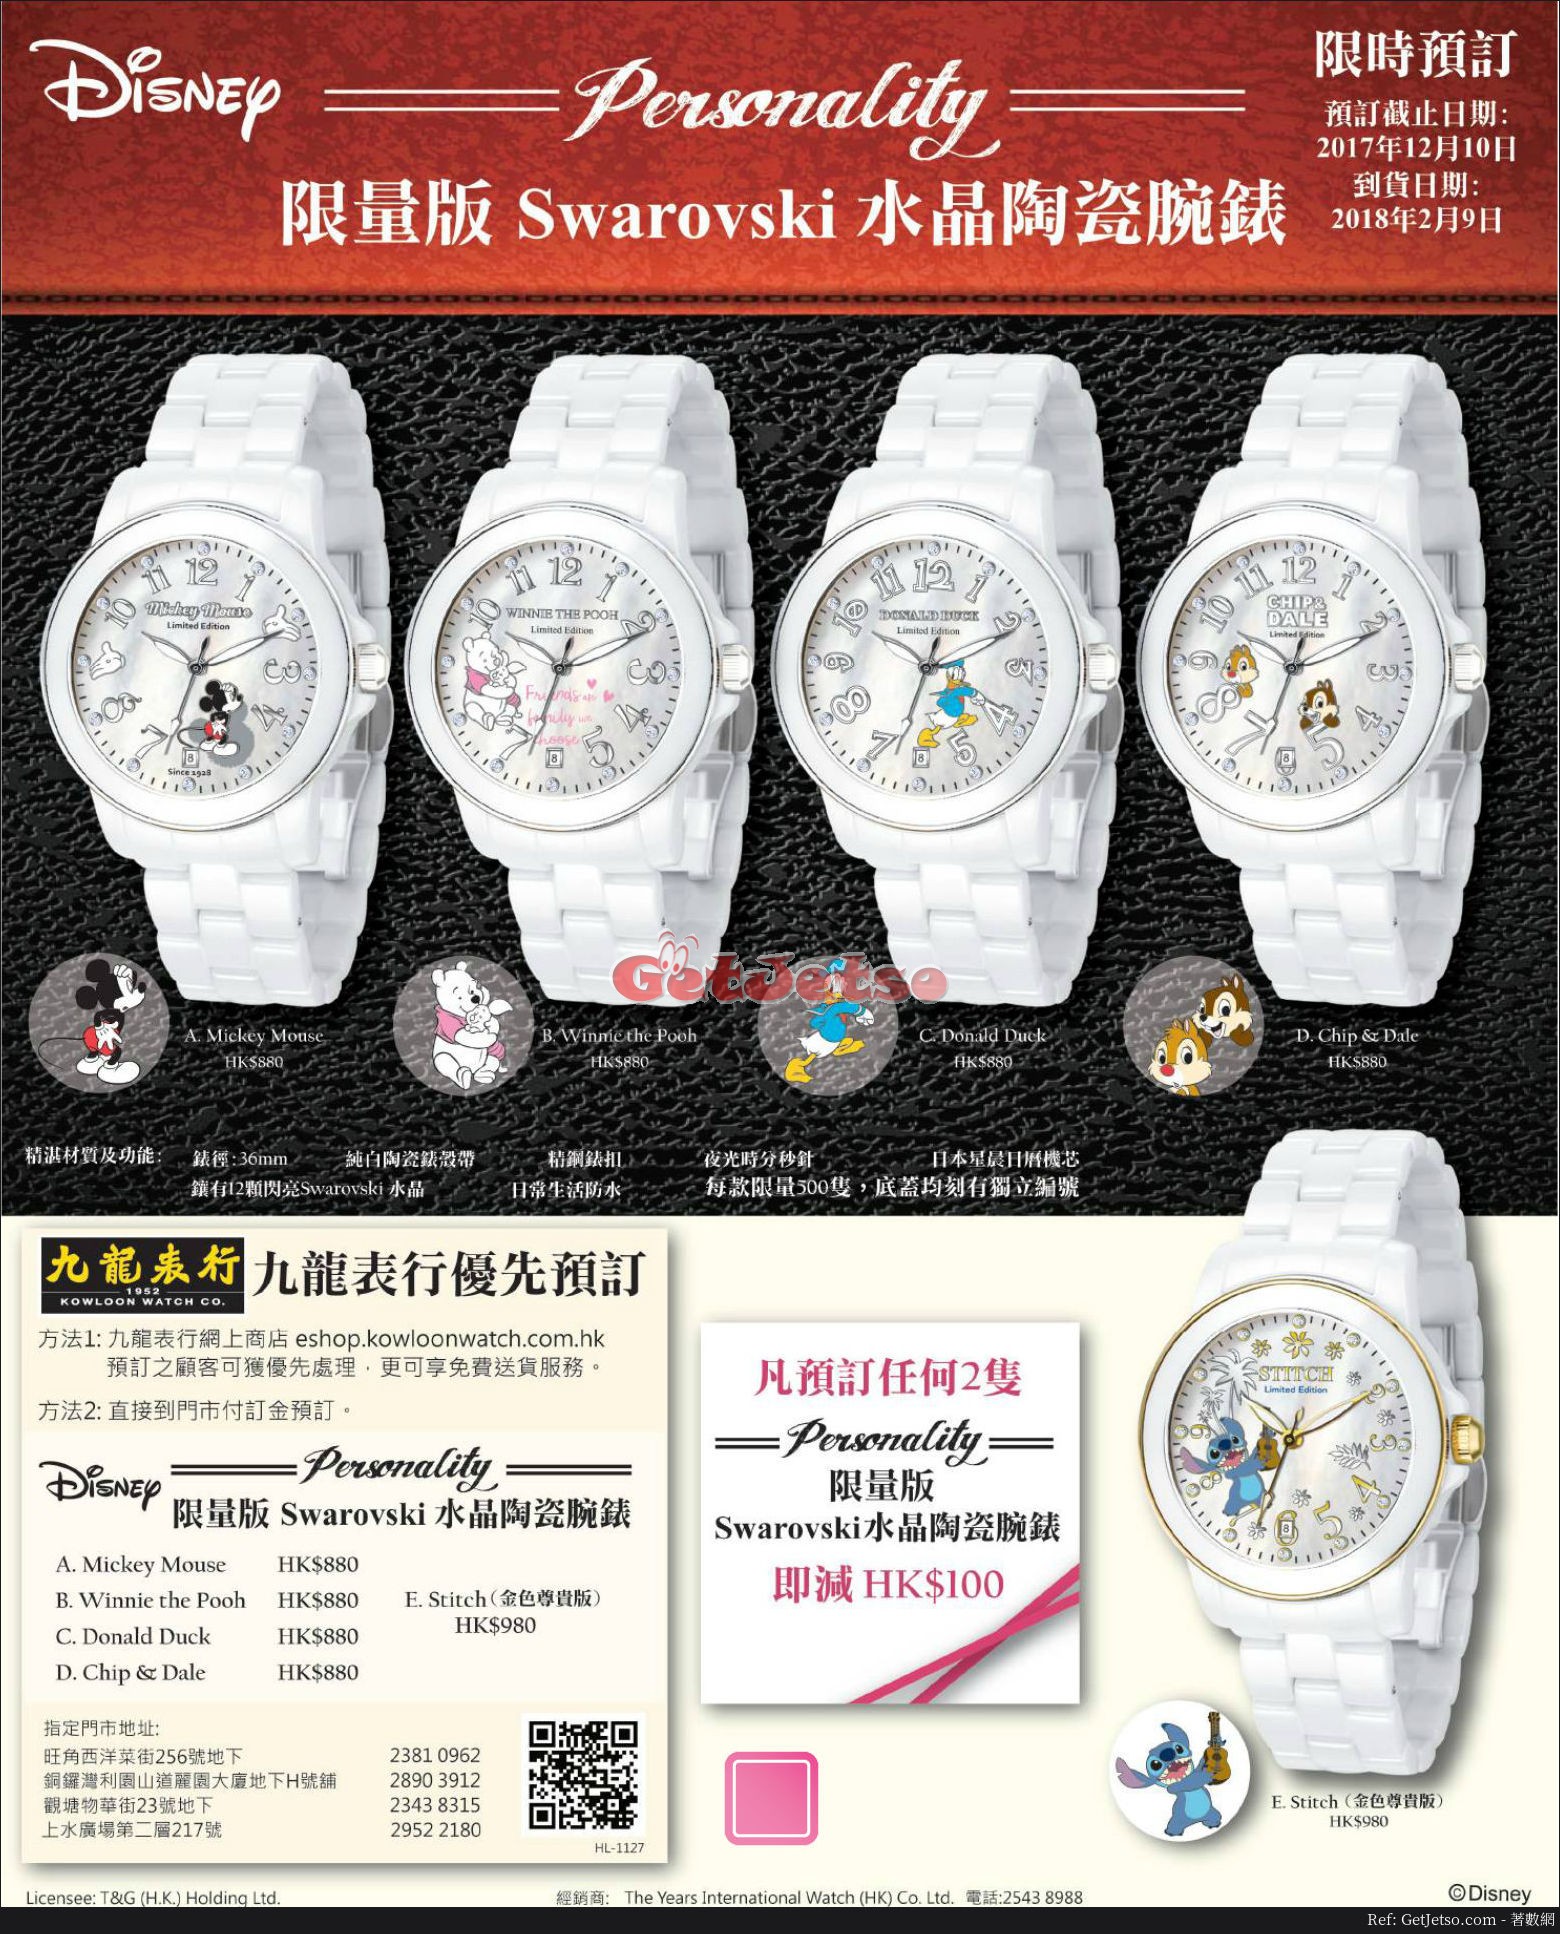 Swarovski 水晶陶瓷腕錶優先預訂優惠(至17年12月10日)圖片1